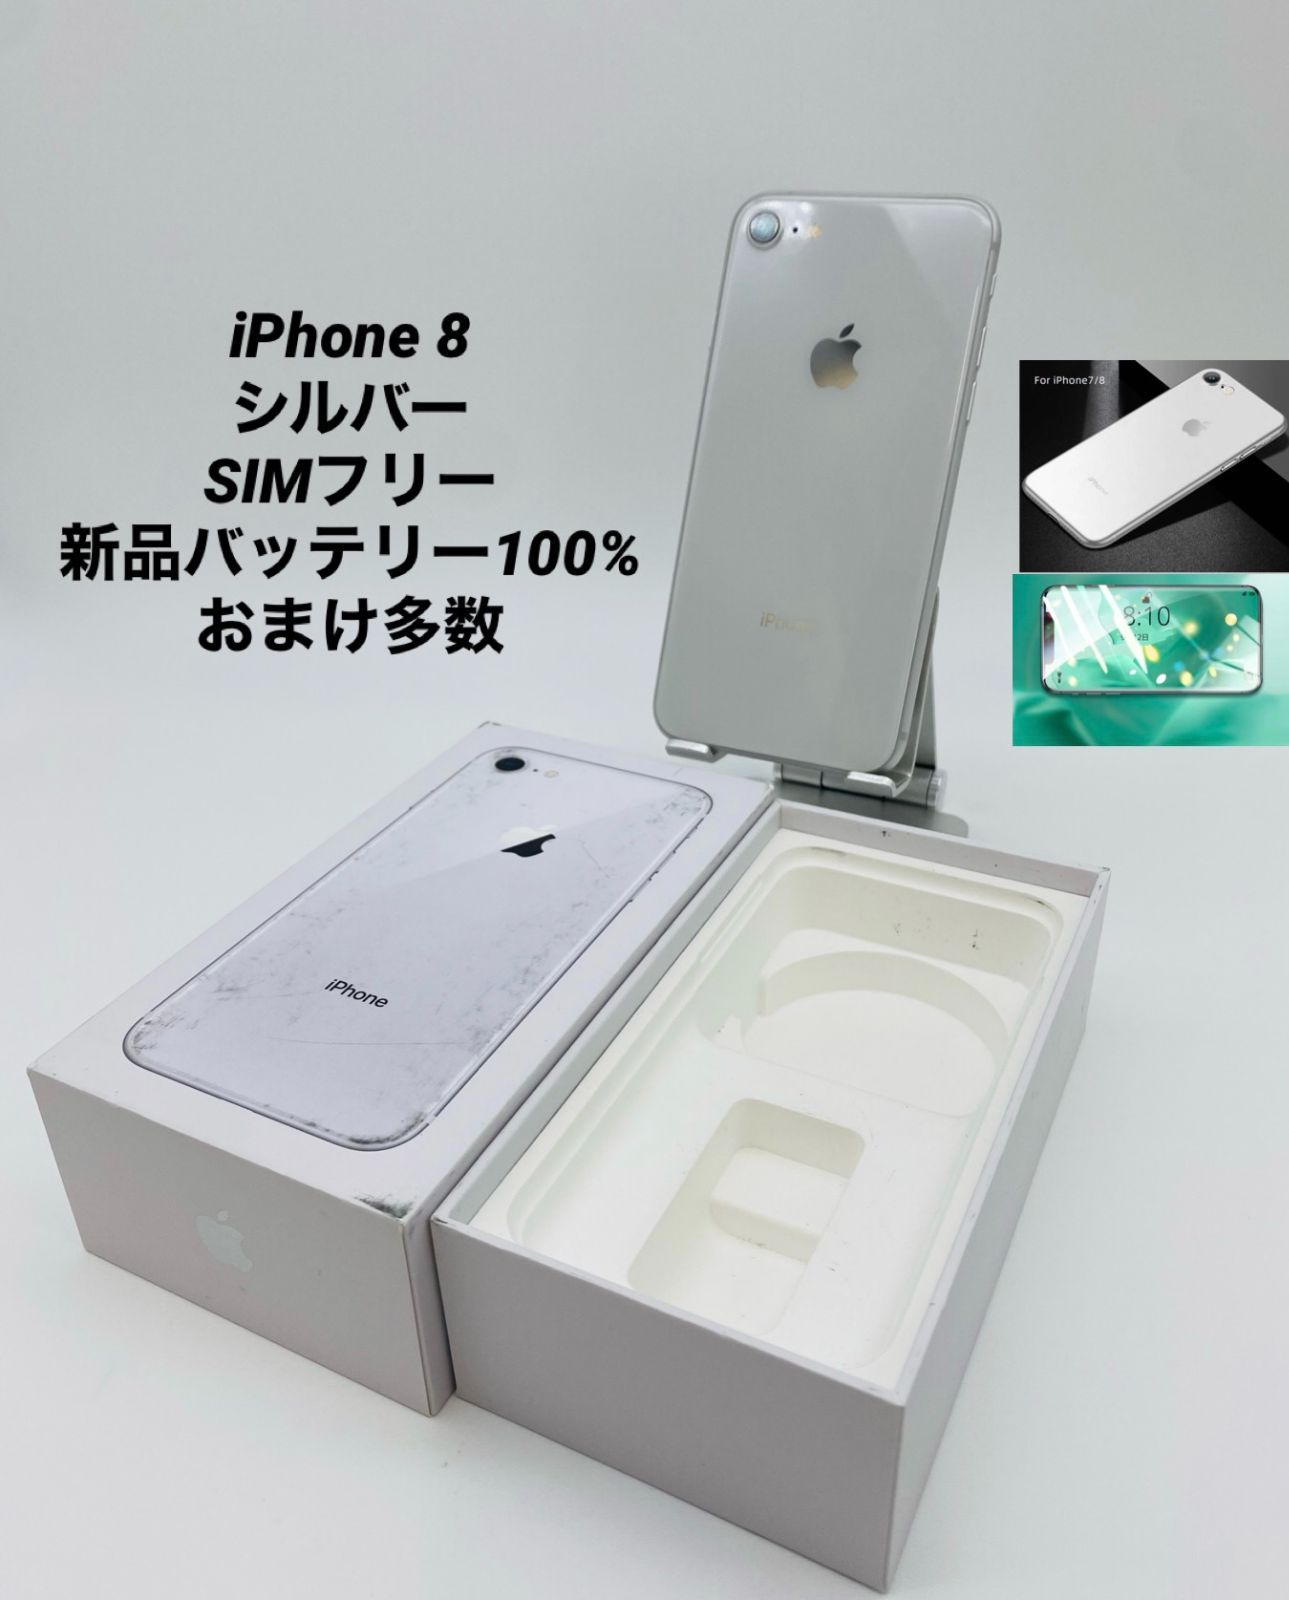 代引き手数料無料 iPhone8 iPhone8 超特価激安 64GB シルバー ...